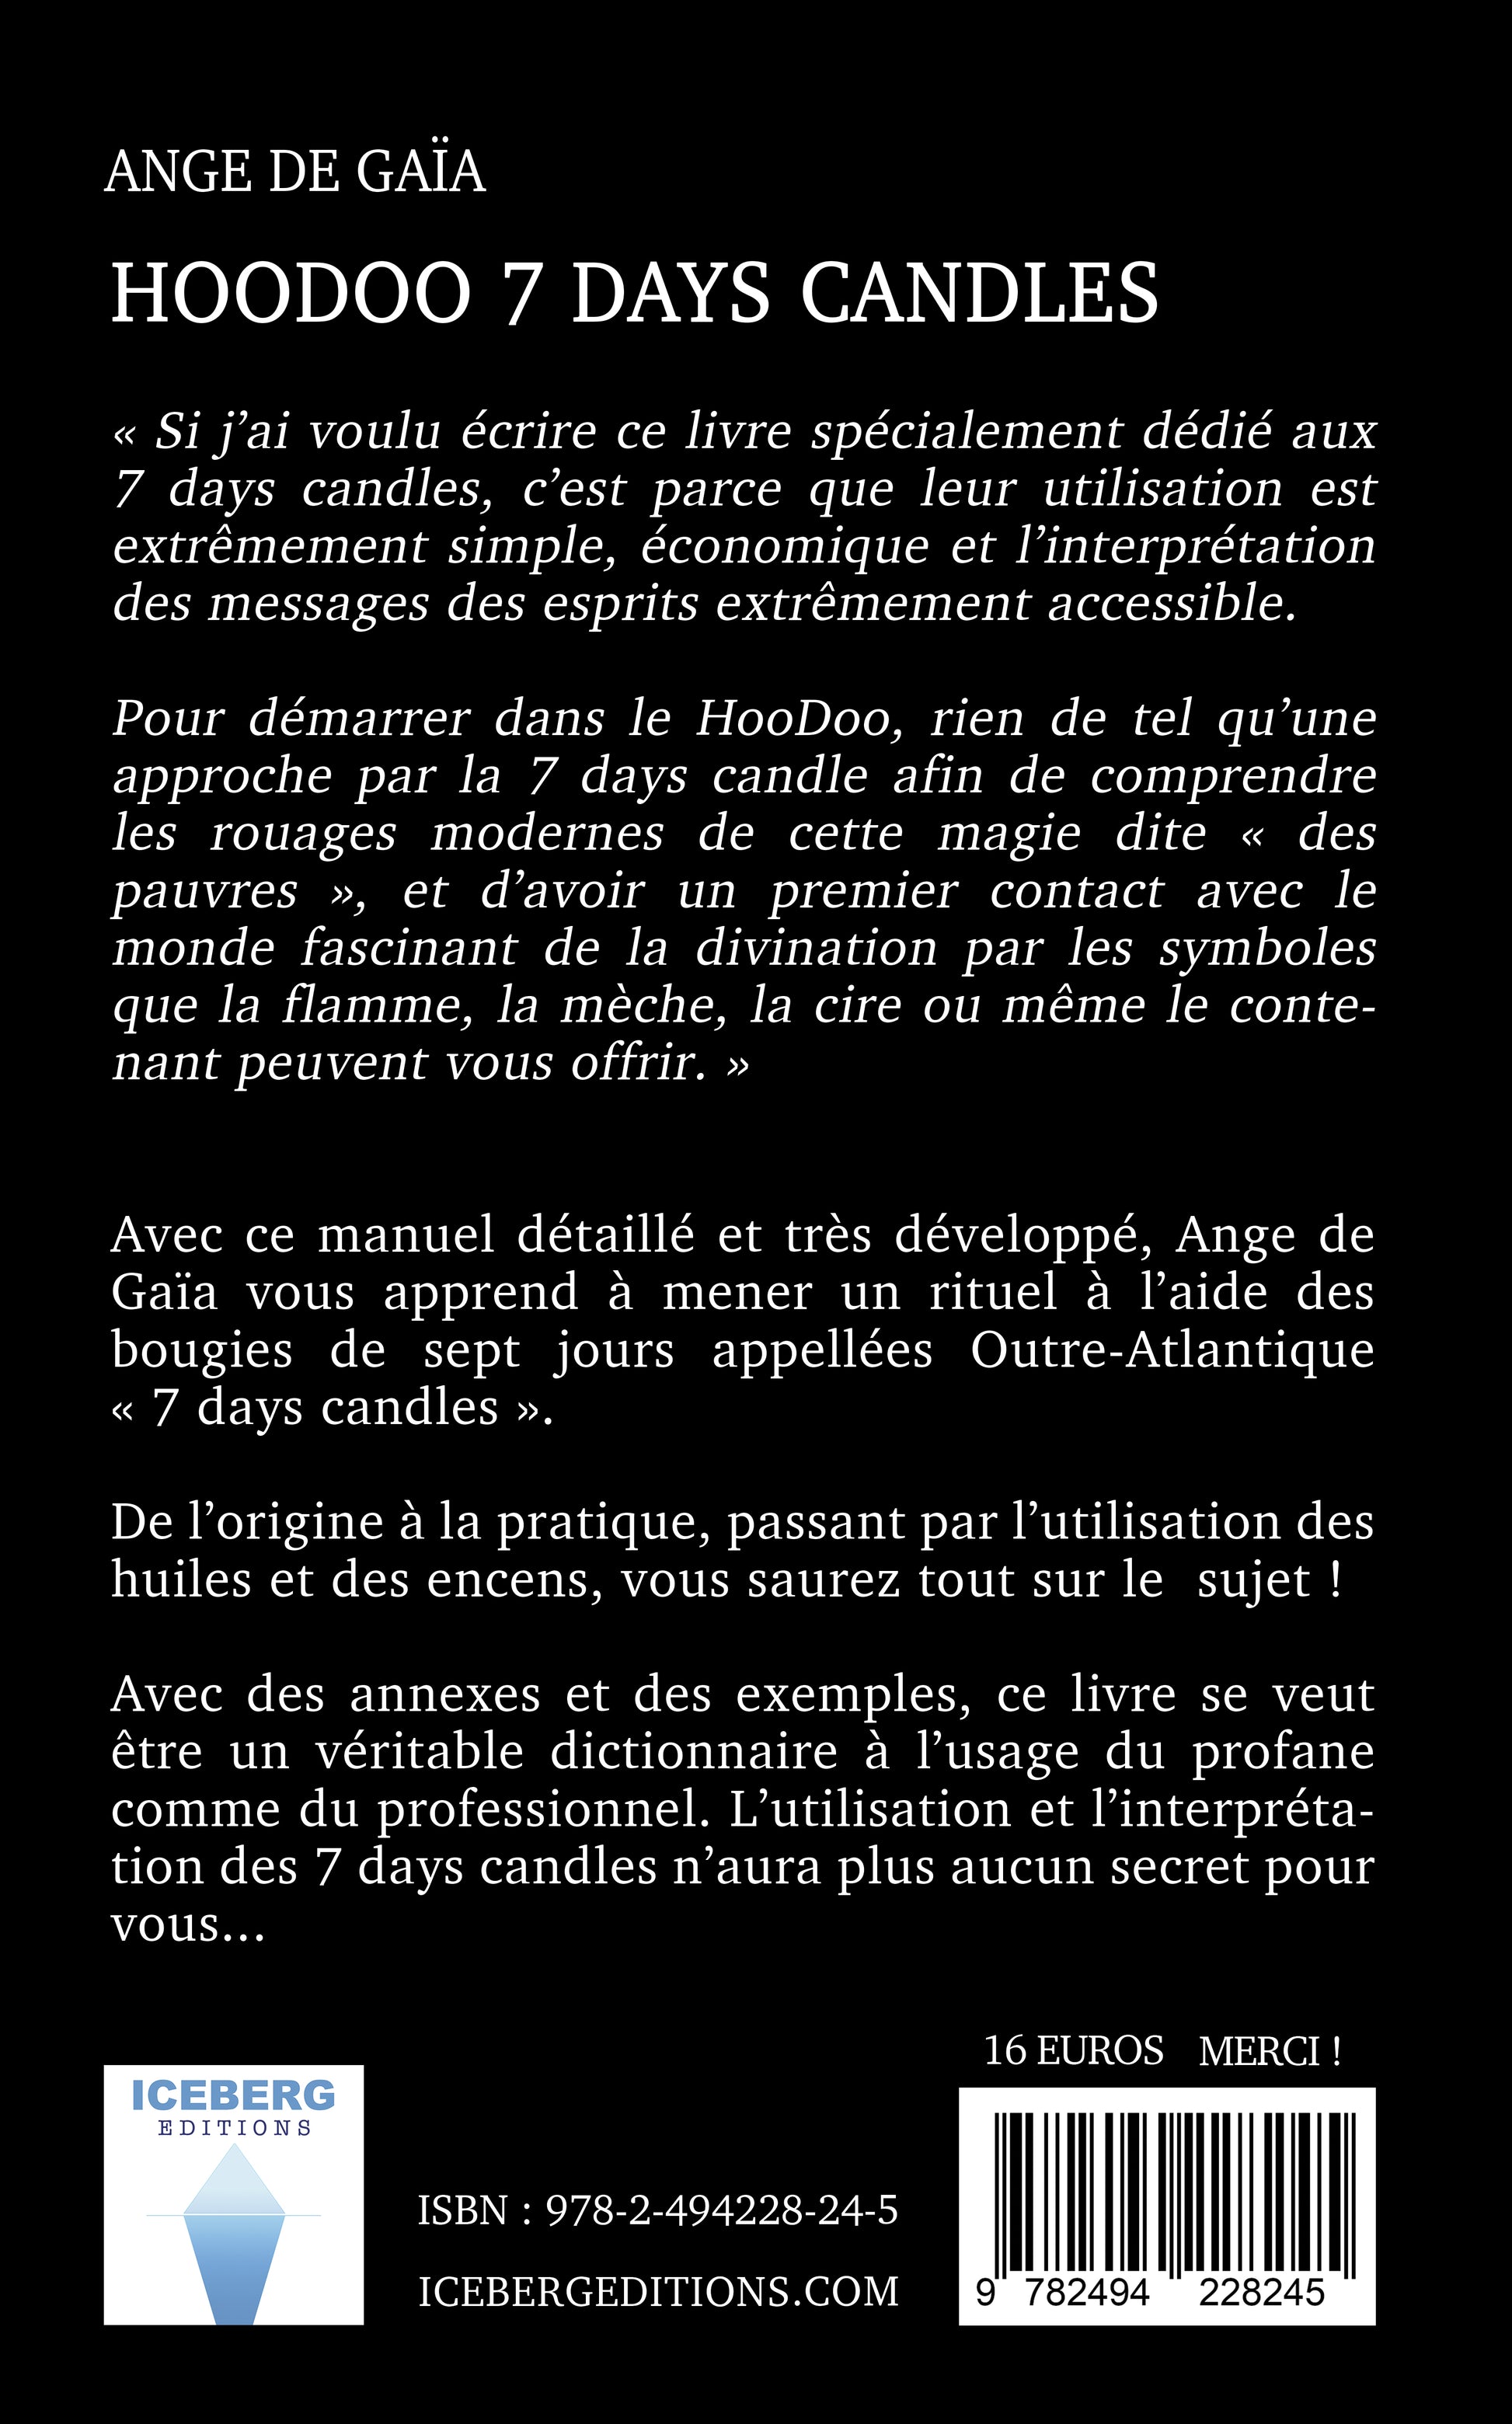 Quatrième de couverture du livre "HooDoo 7 days candles" de Ange de Gaïa